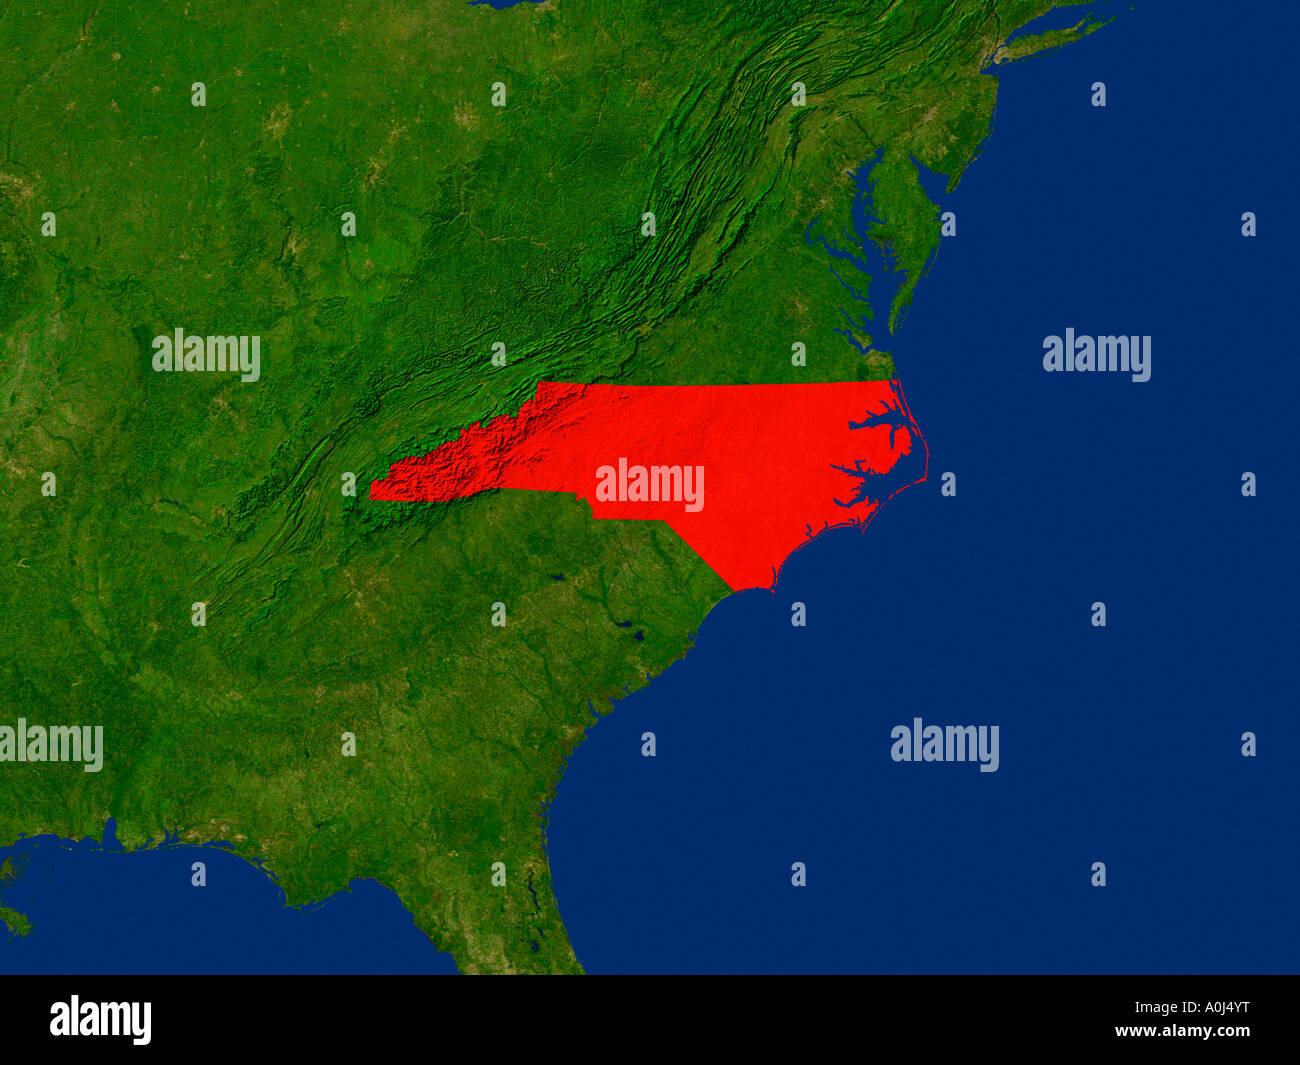 Ha evidenziato un'immagine satellitare della Carolina del Nord e gli Stati Uniti d'America Foto Stock